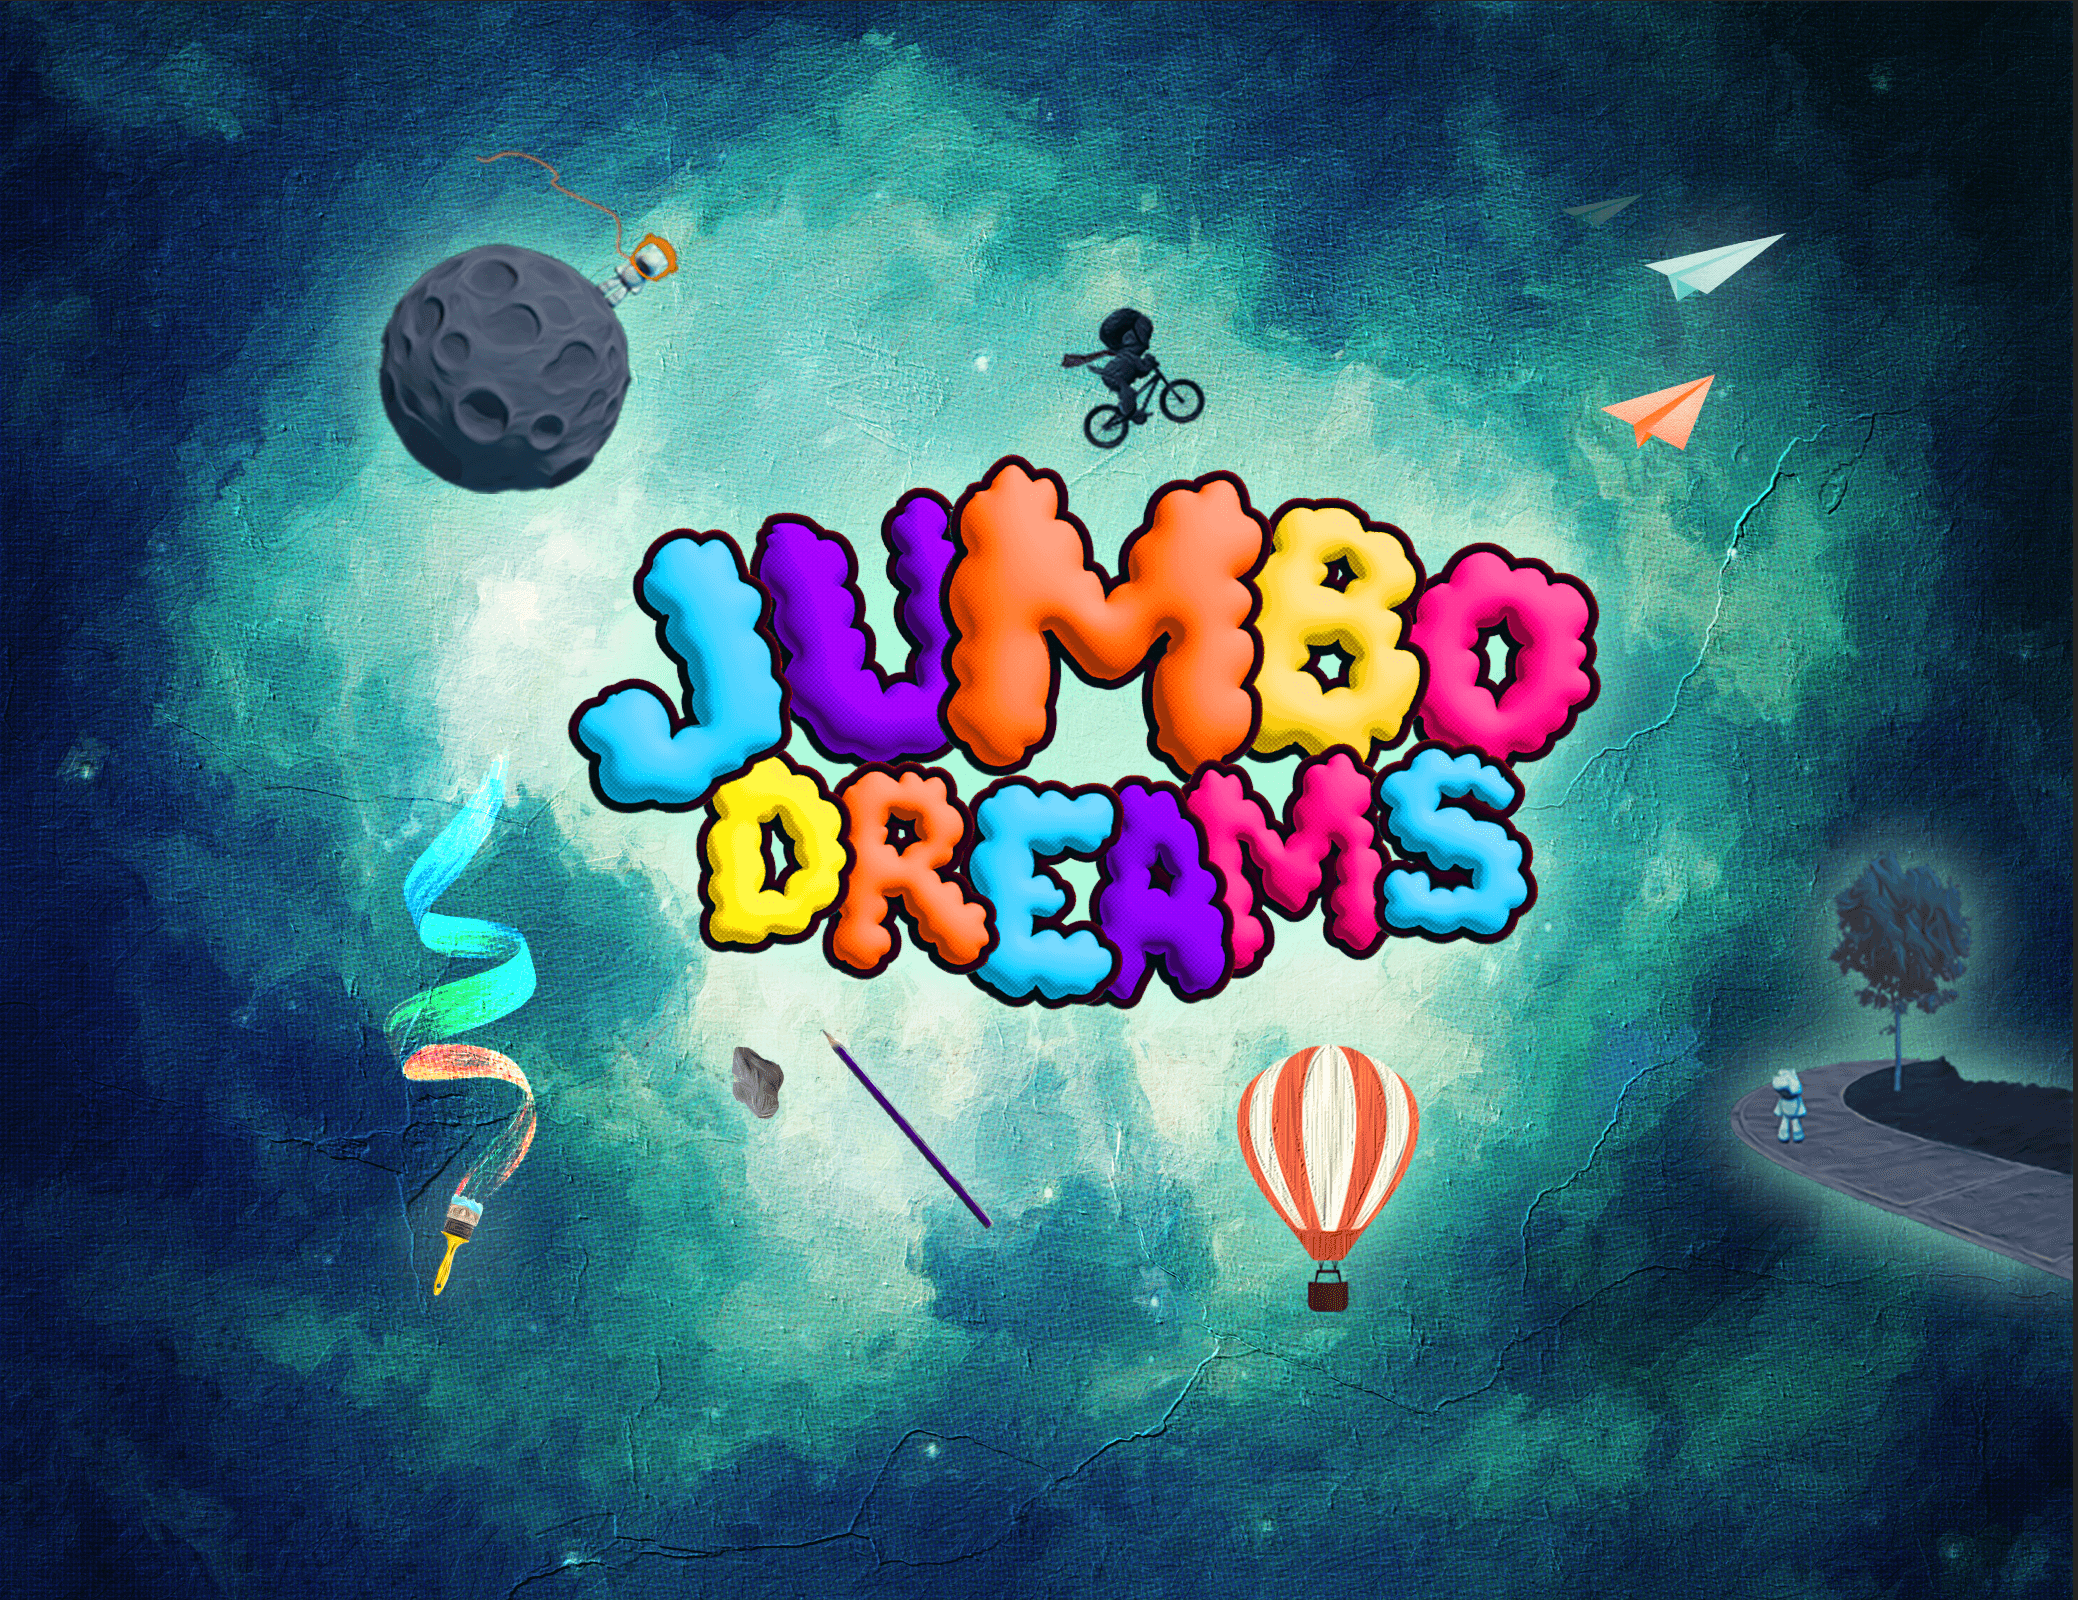 Jumbo_Dreams